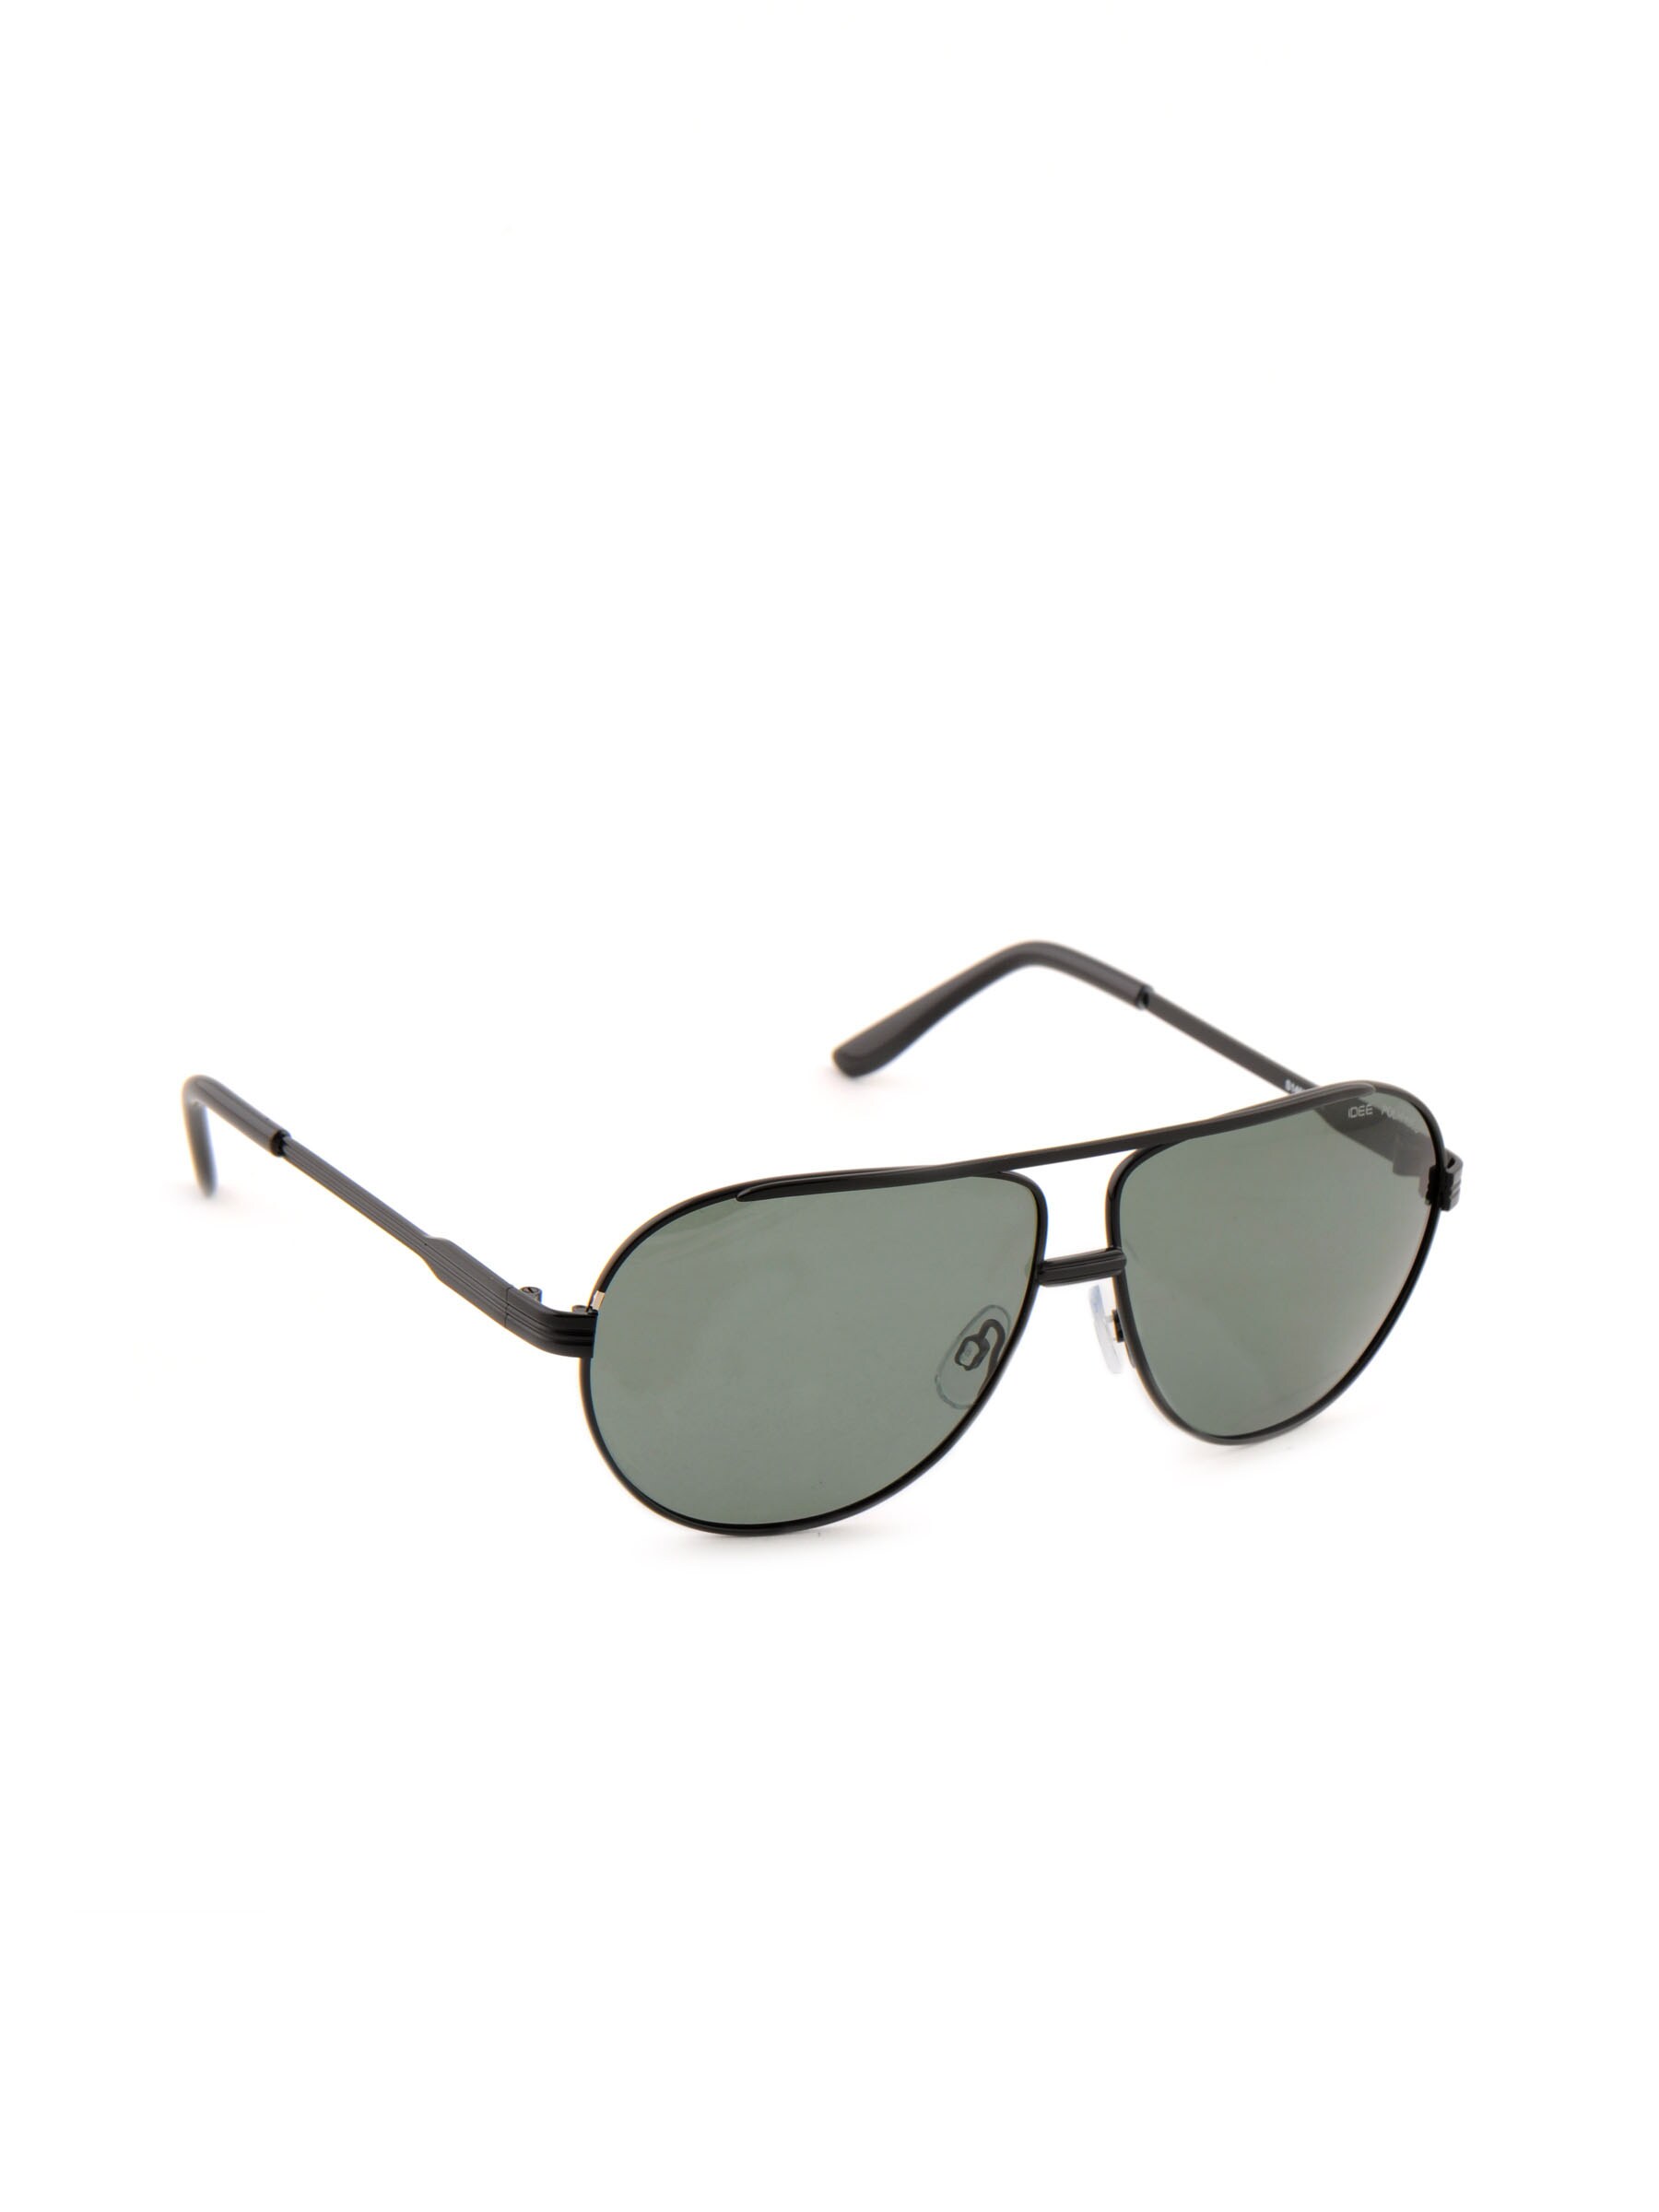 Idee Men Funky Eyewear Green Sunglasses